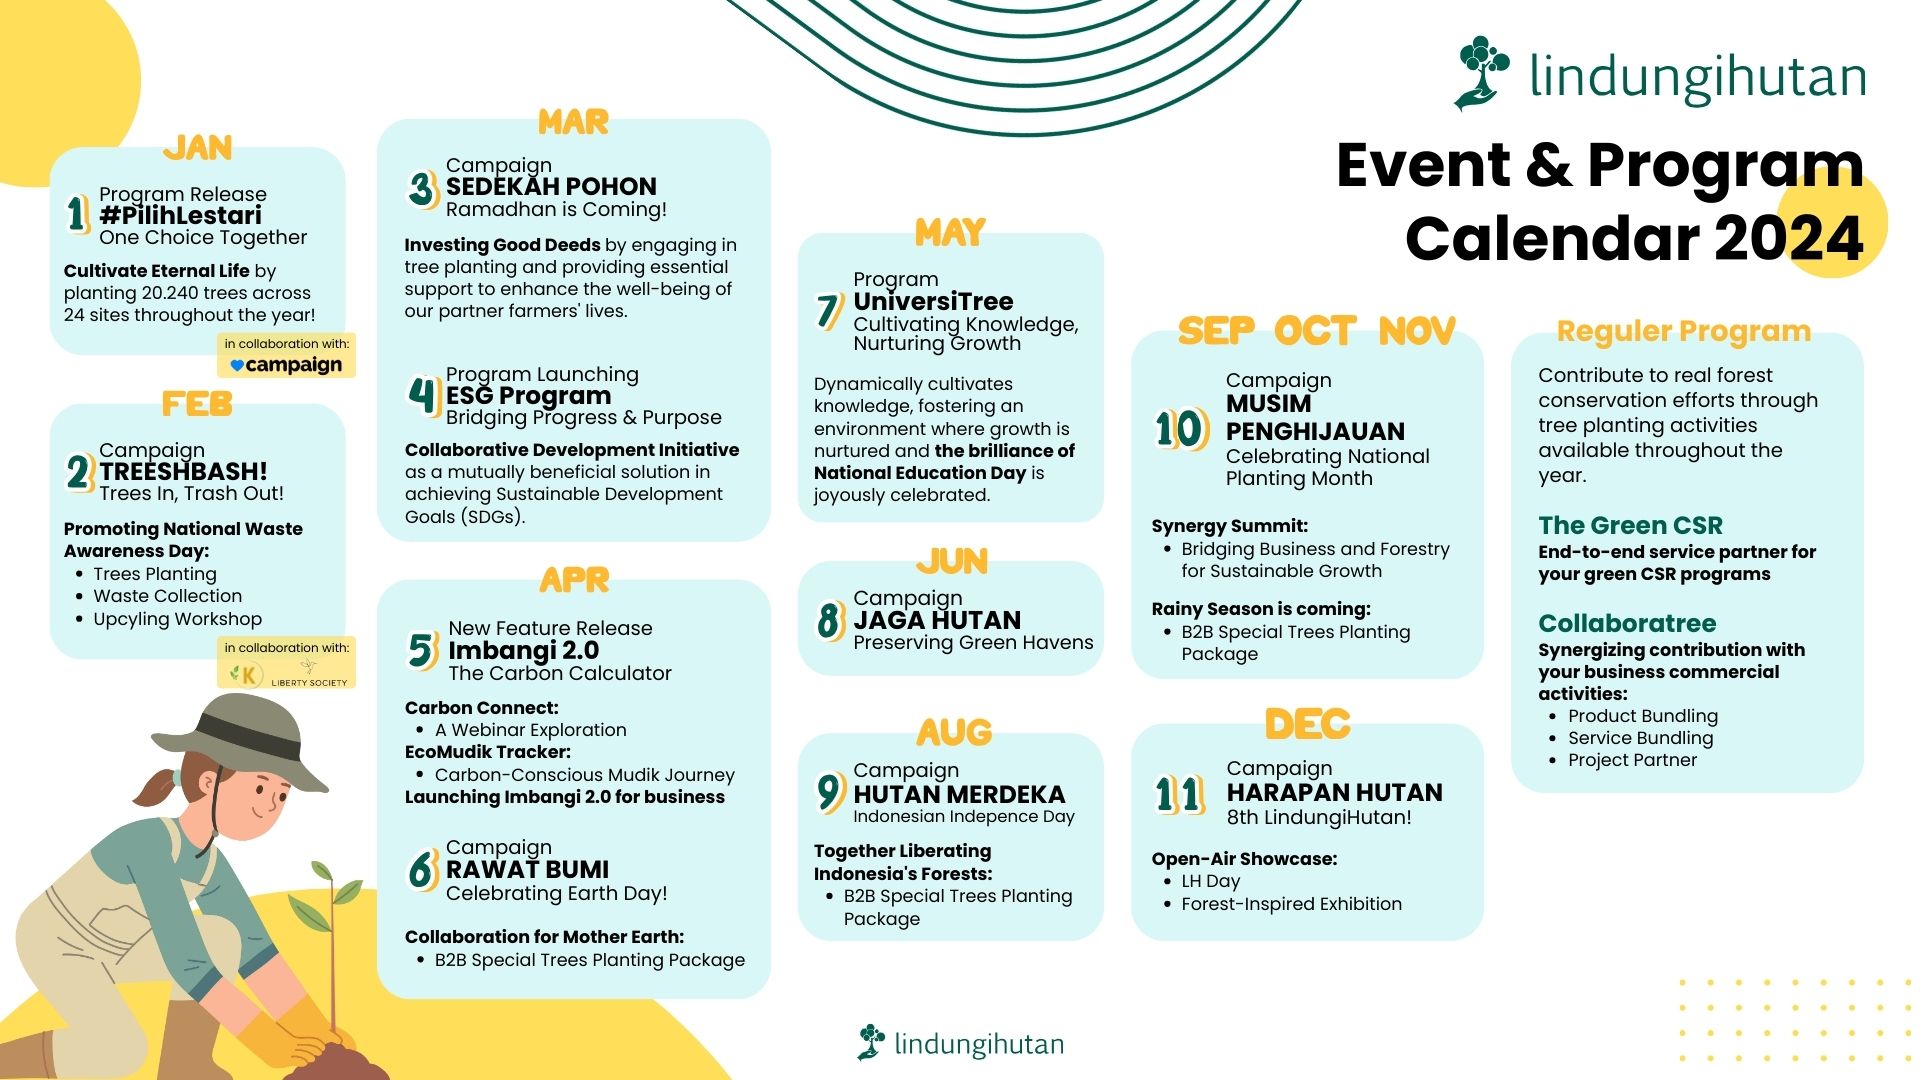 Kalender event dan program LindungiHutan 2024 (Dokumentasi: LindungiHutan).